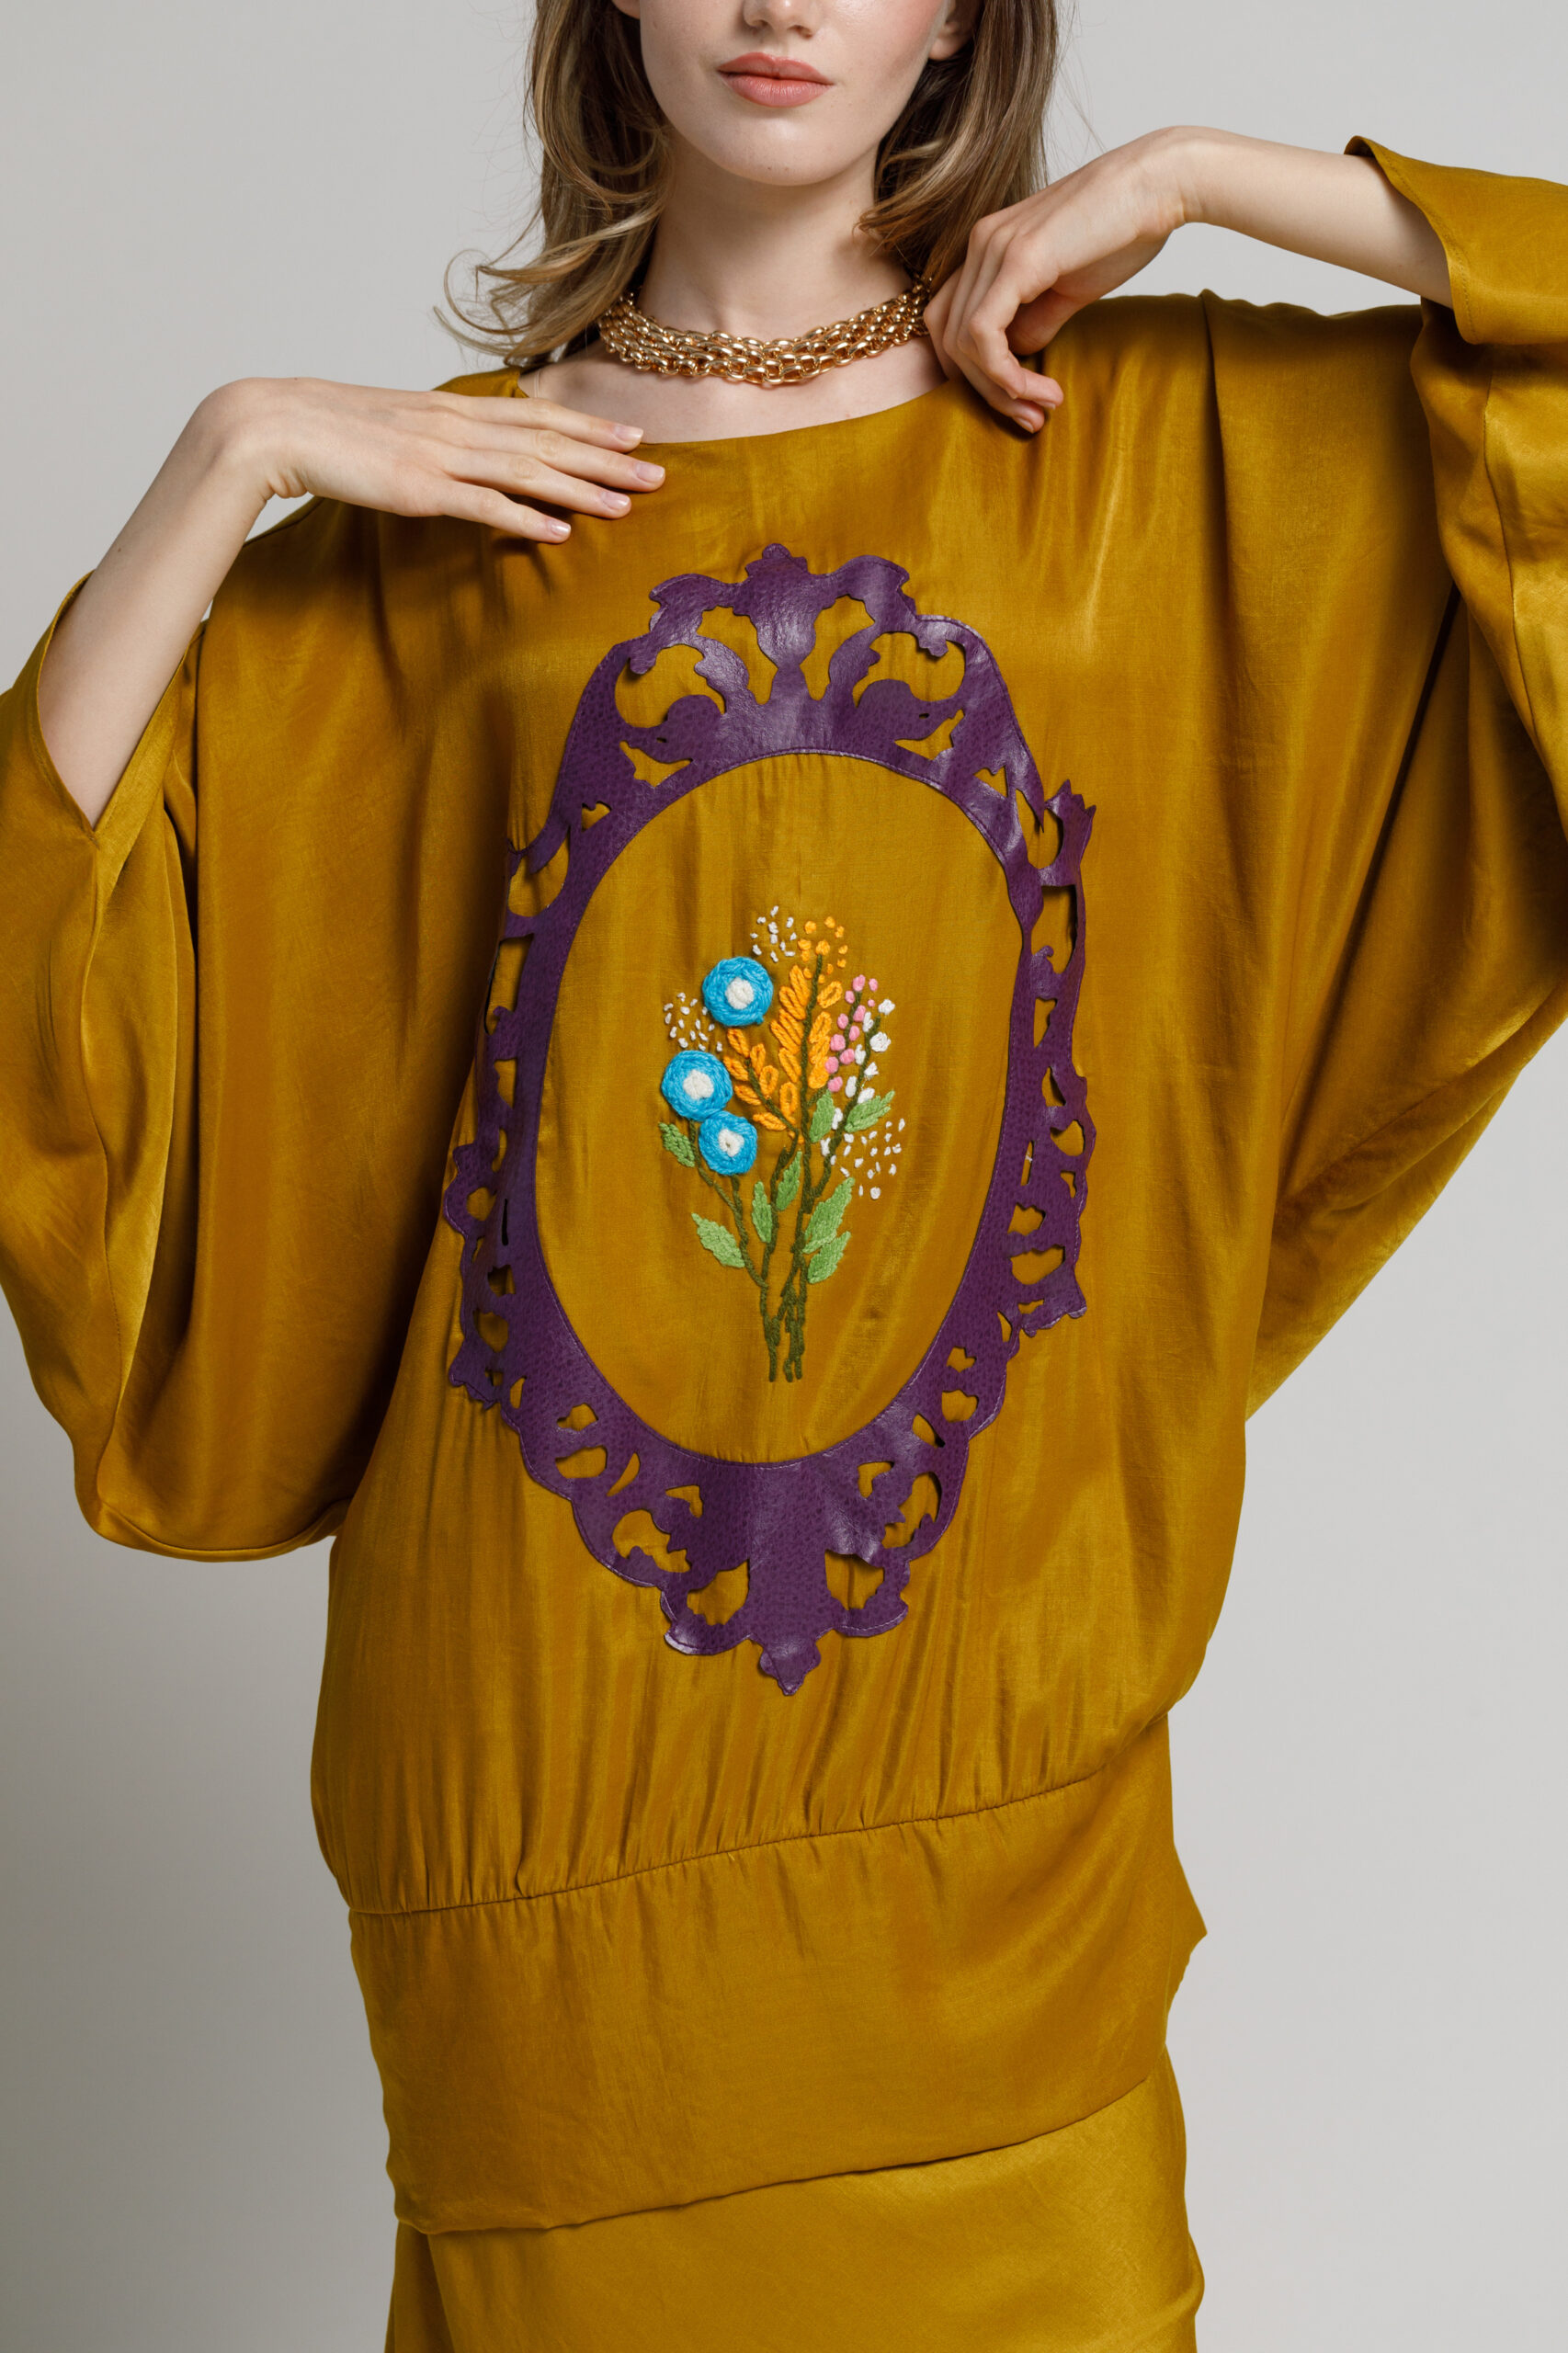 Bluza  KEIKO bronz auriu cu manceci largi. Materiale naturale, design unicat, cu broderie si aplicatii handmade